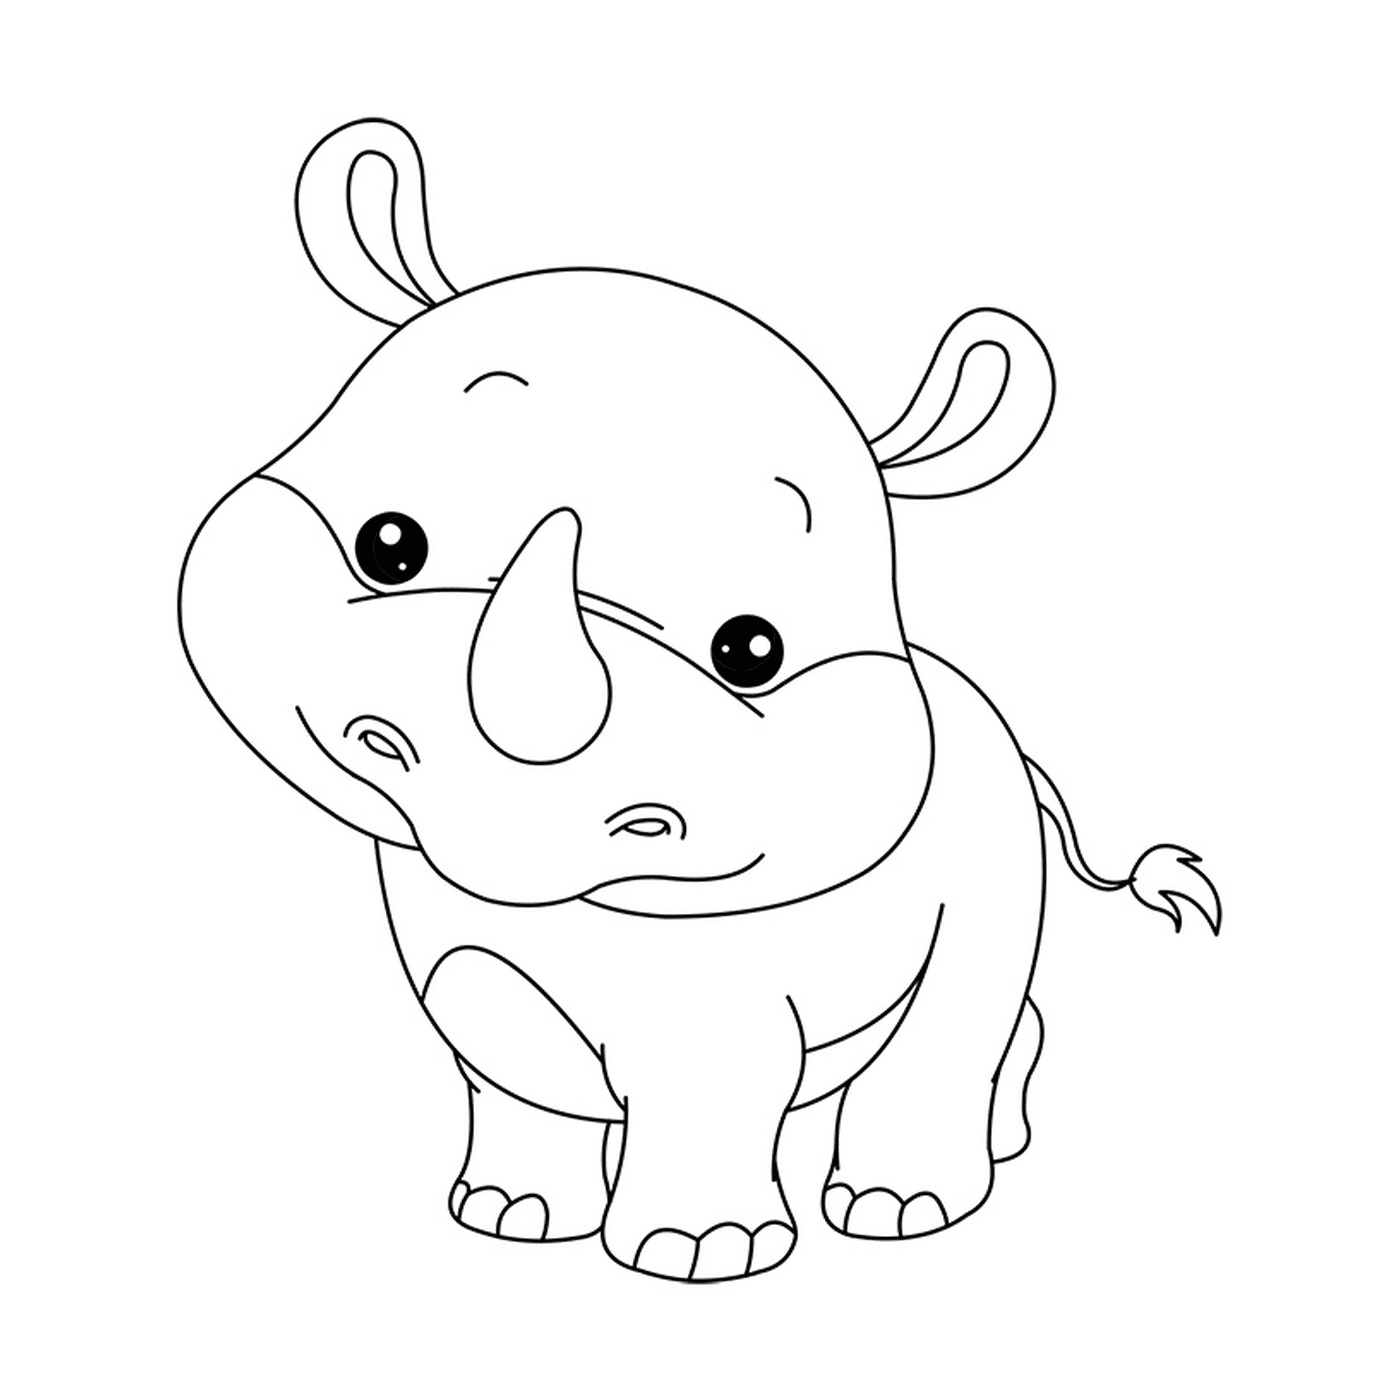  一只婴儿犀牛在看镜头 